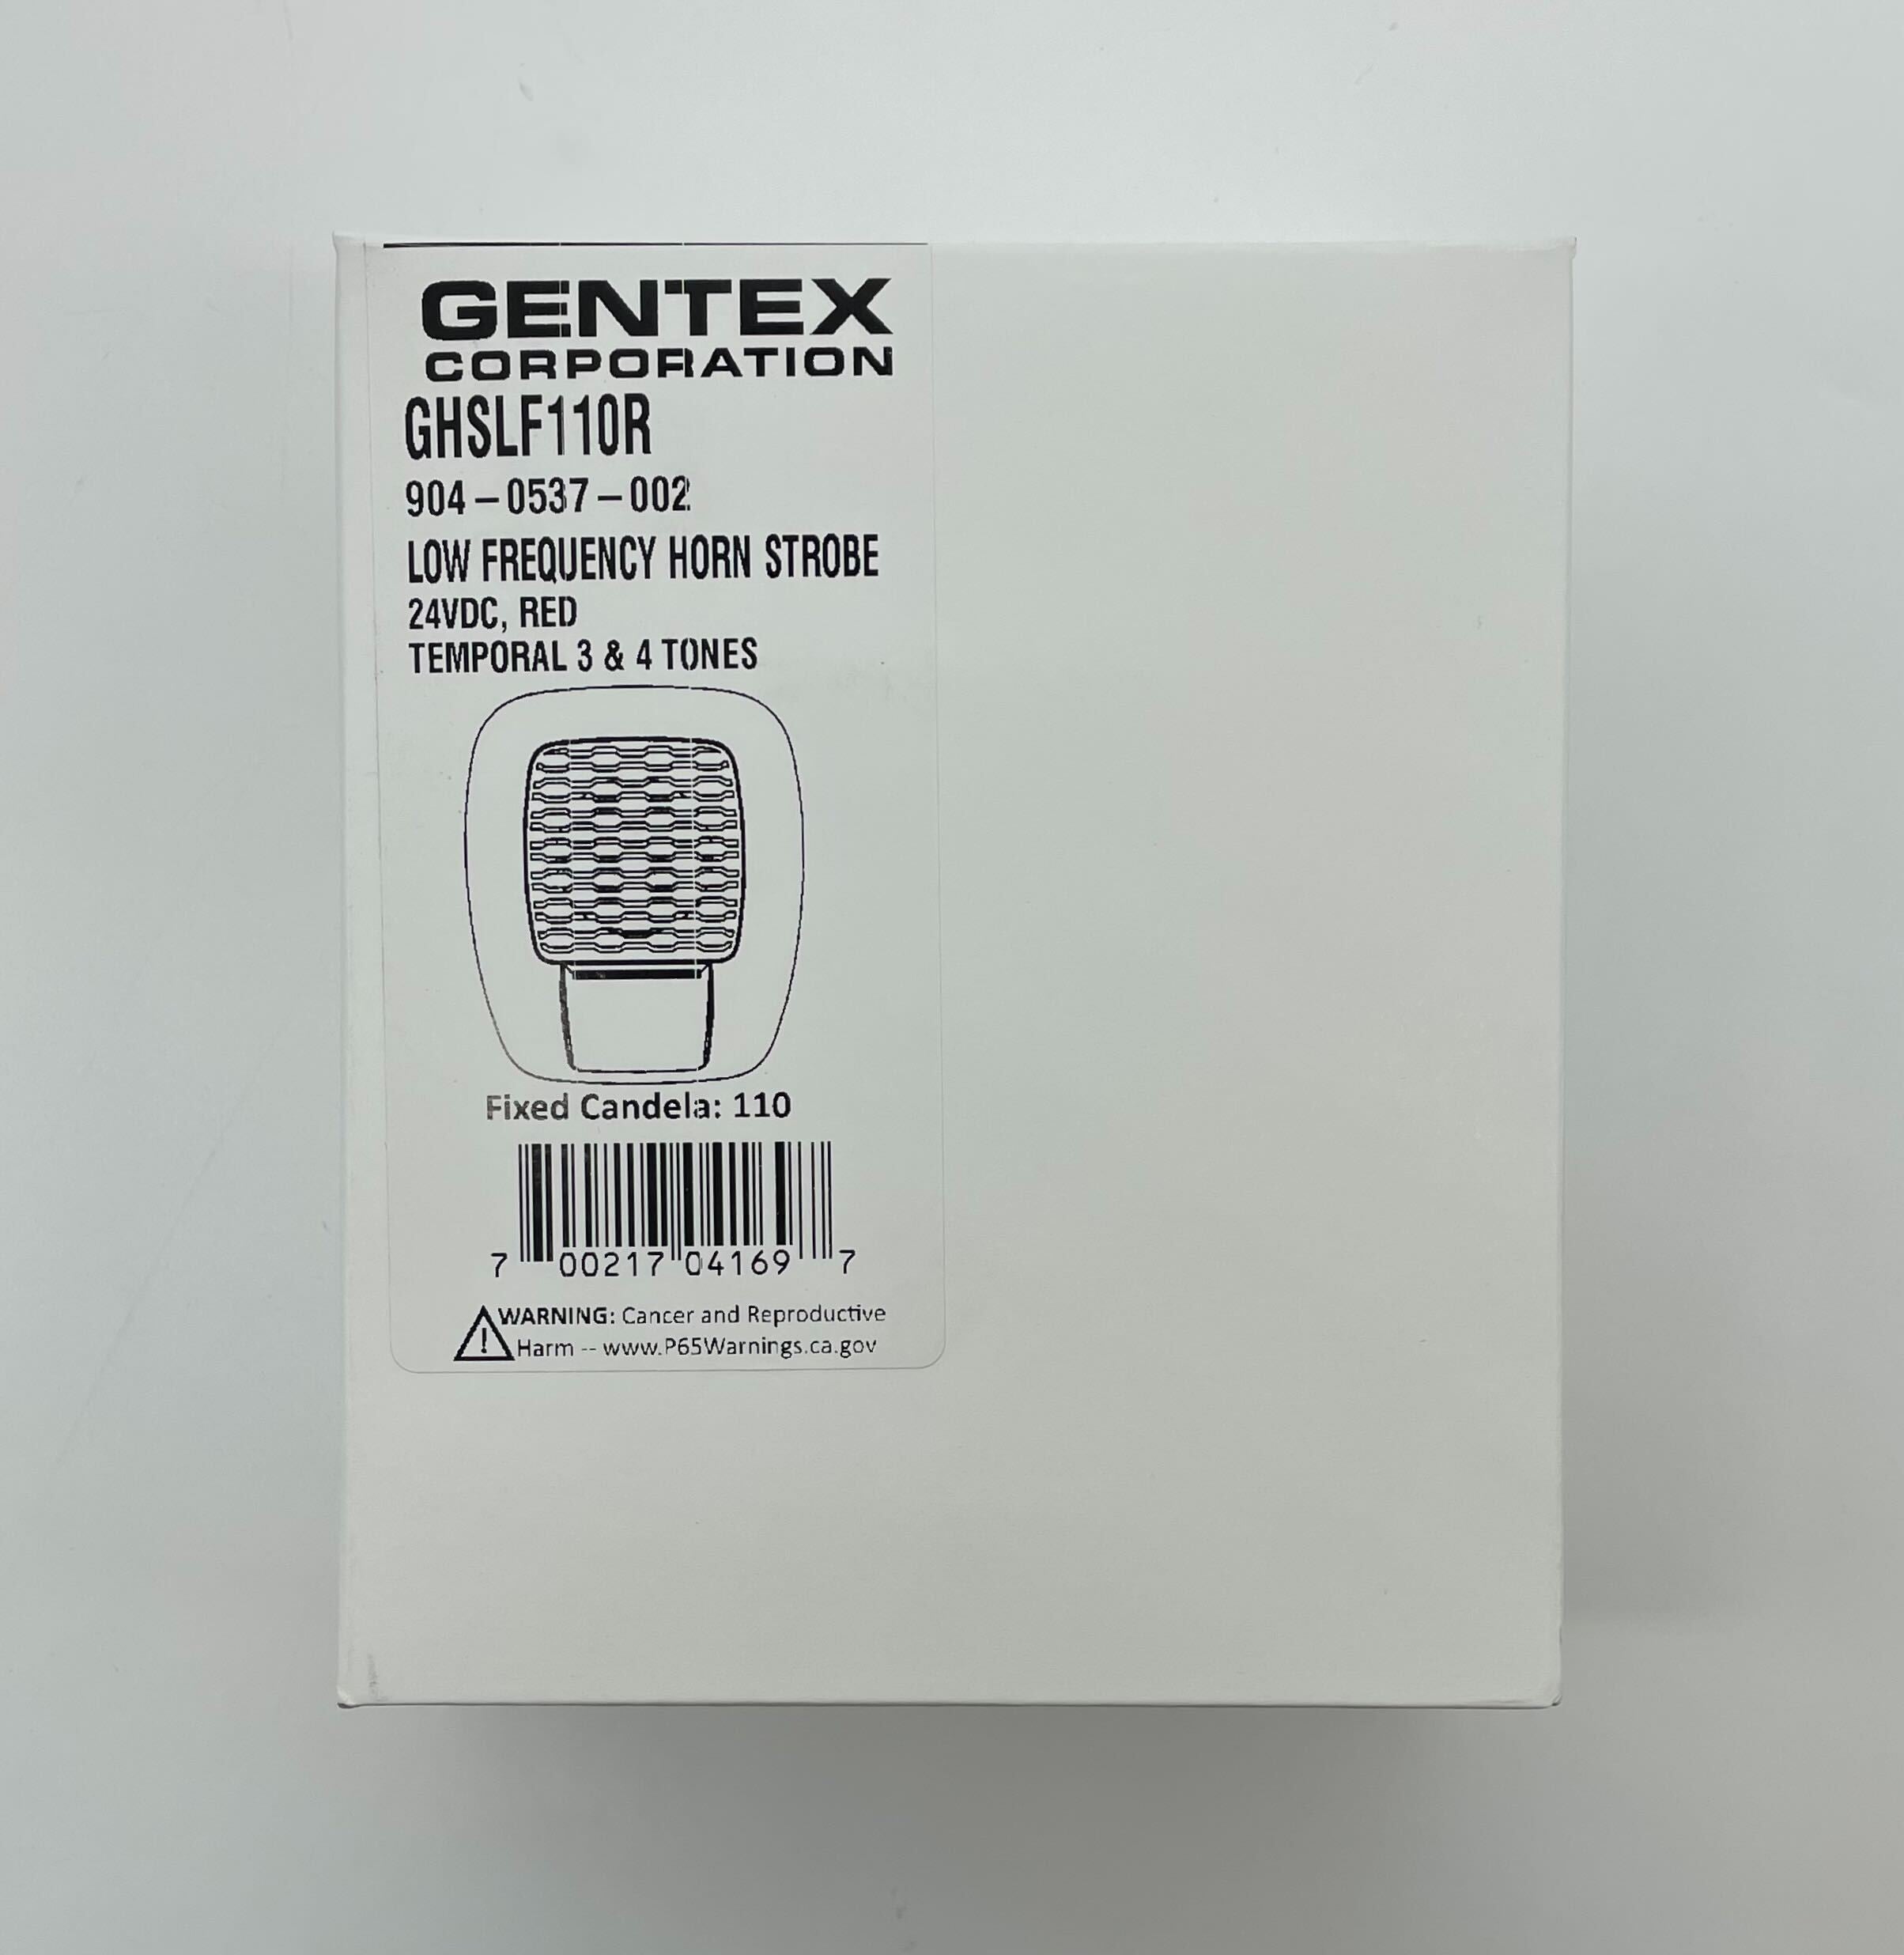 Gentex GHSLF110R